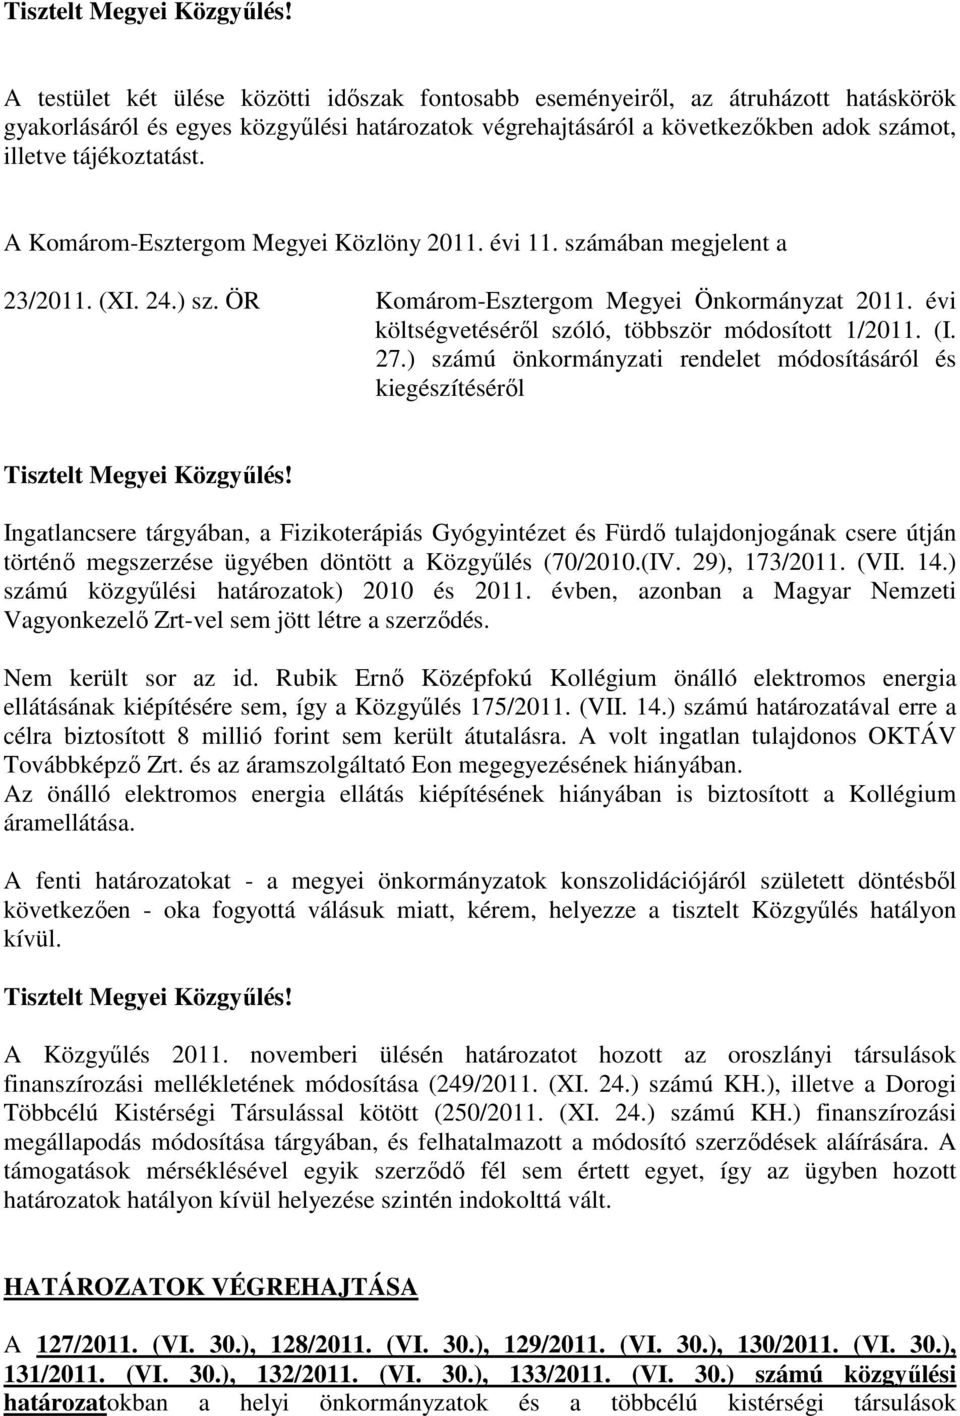 A Komárom-Esztergom Megyei Közlöny 2011. évi 11. számában megjelent a 23/2011. (XI. 24.) sz. ÖR Komárom-Esztergom Megyei Önkormányzat 2011. évi költségvetésérıl szóló, többször módosított 1/2011. (I.